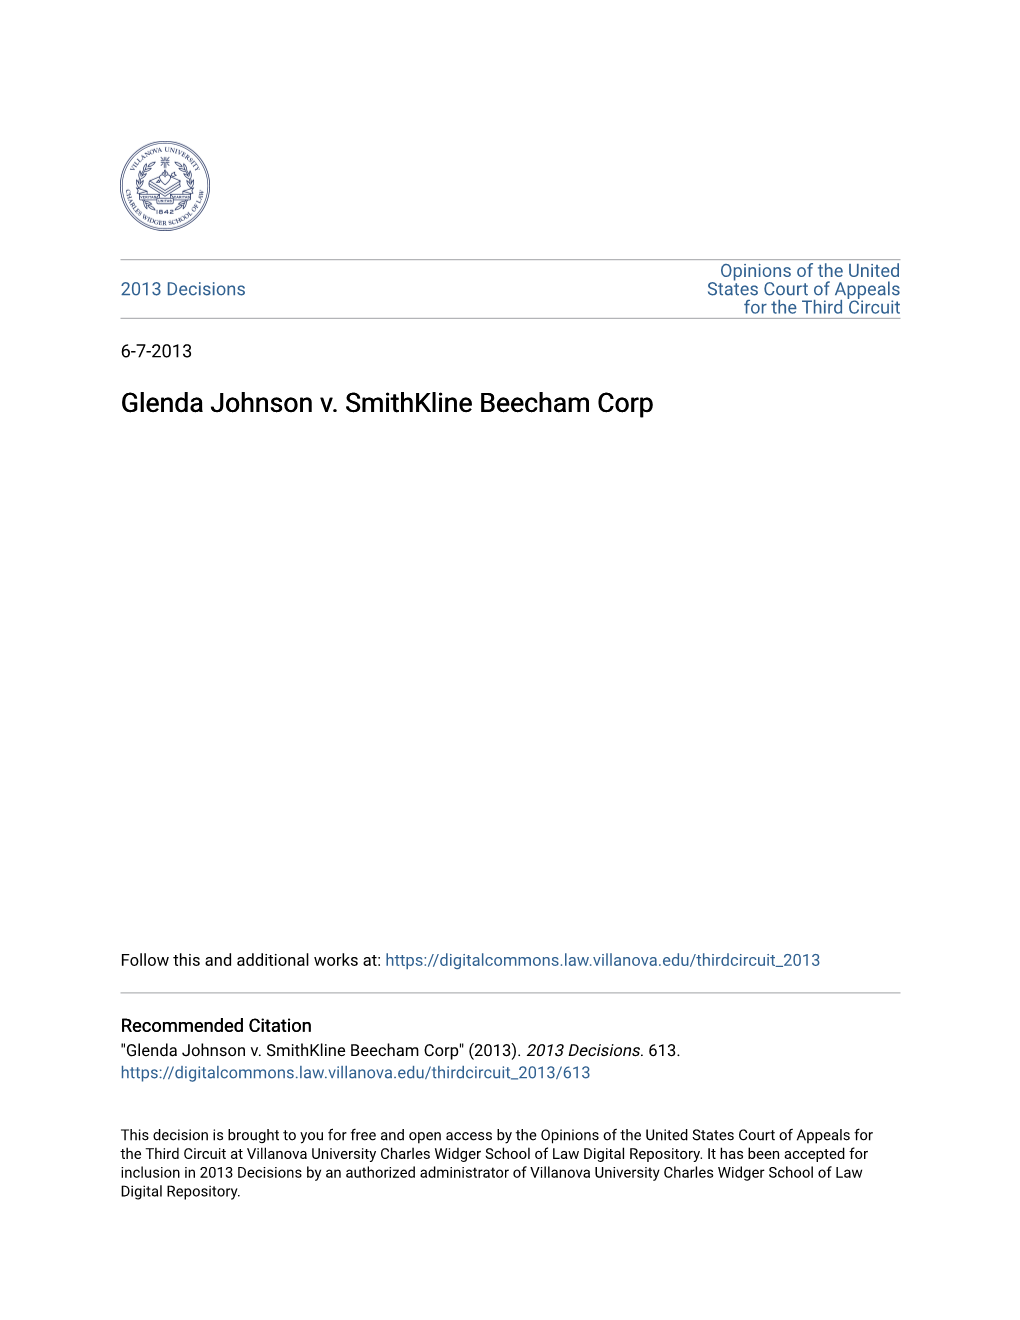 Glenda Johnson V. Smithkline Beecham Corp